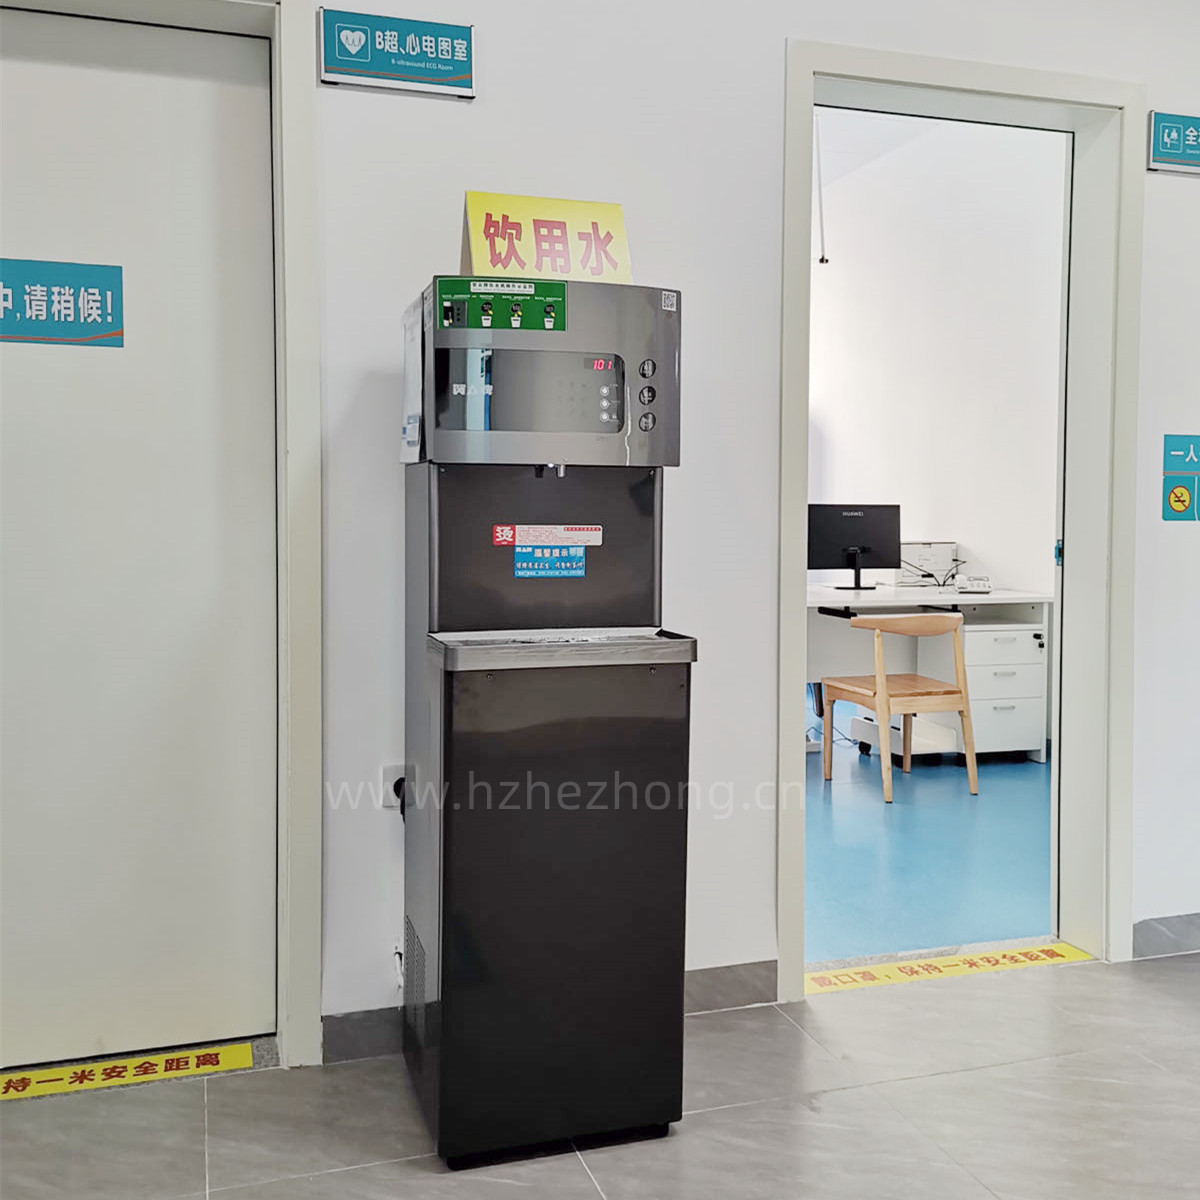 中韩产业园起步区卫生服务中心选用贺众饮水机